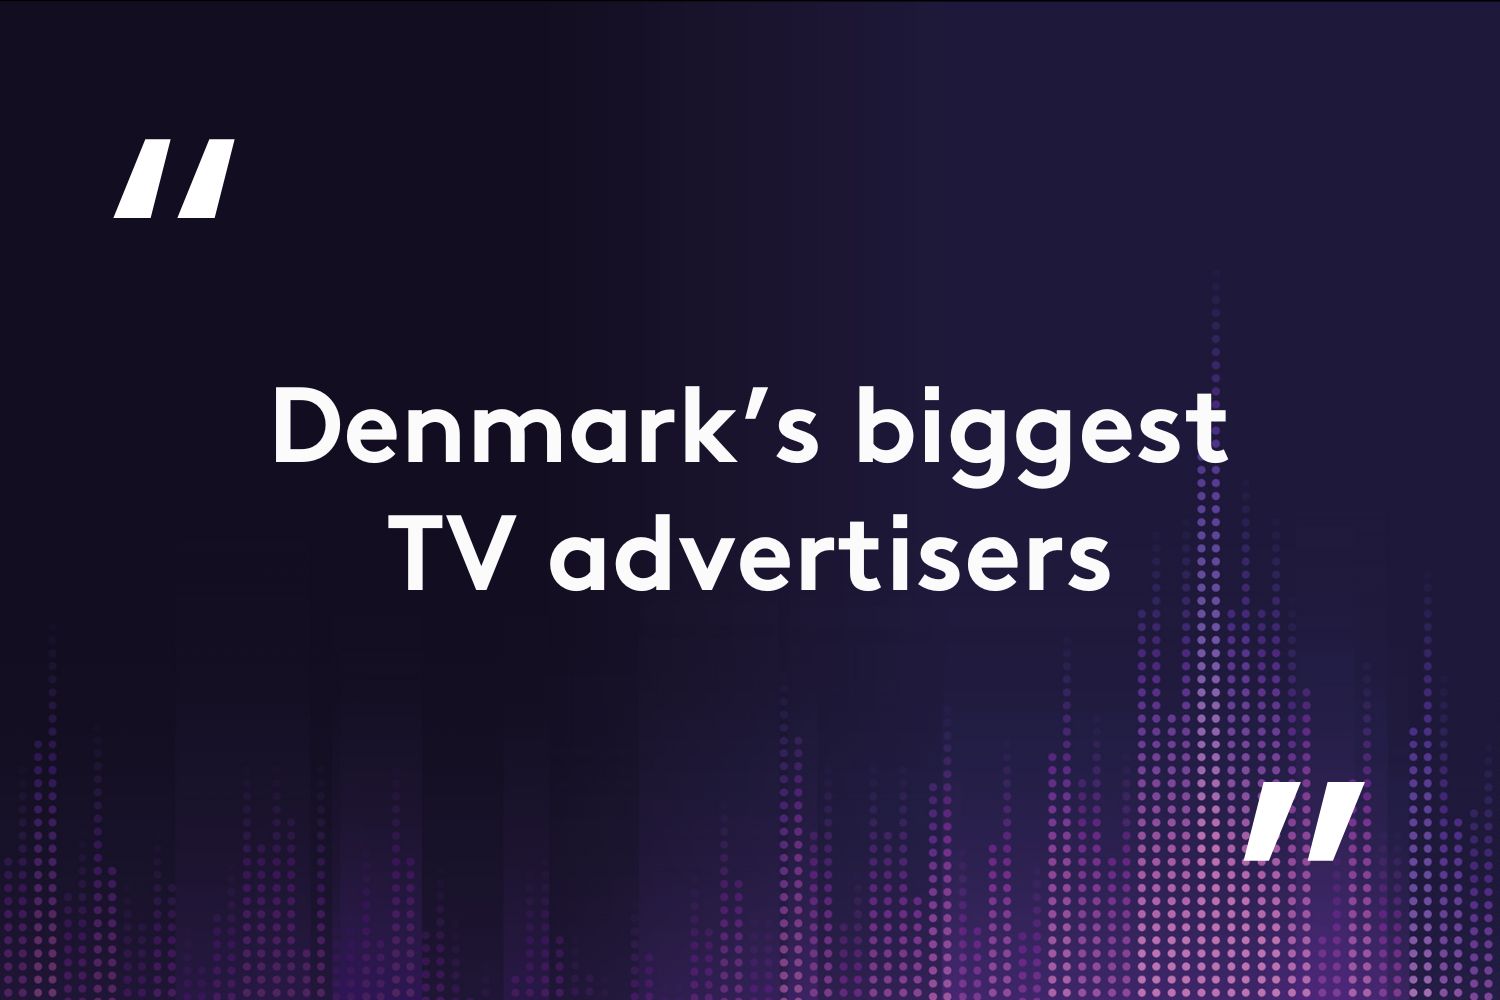 Denmark's biggest TV advertisers